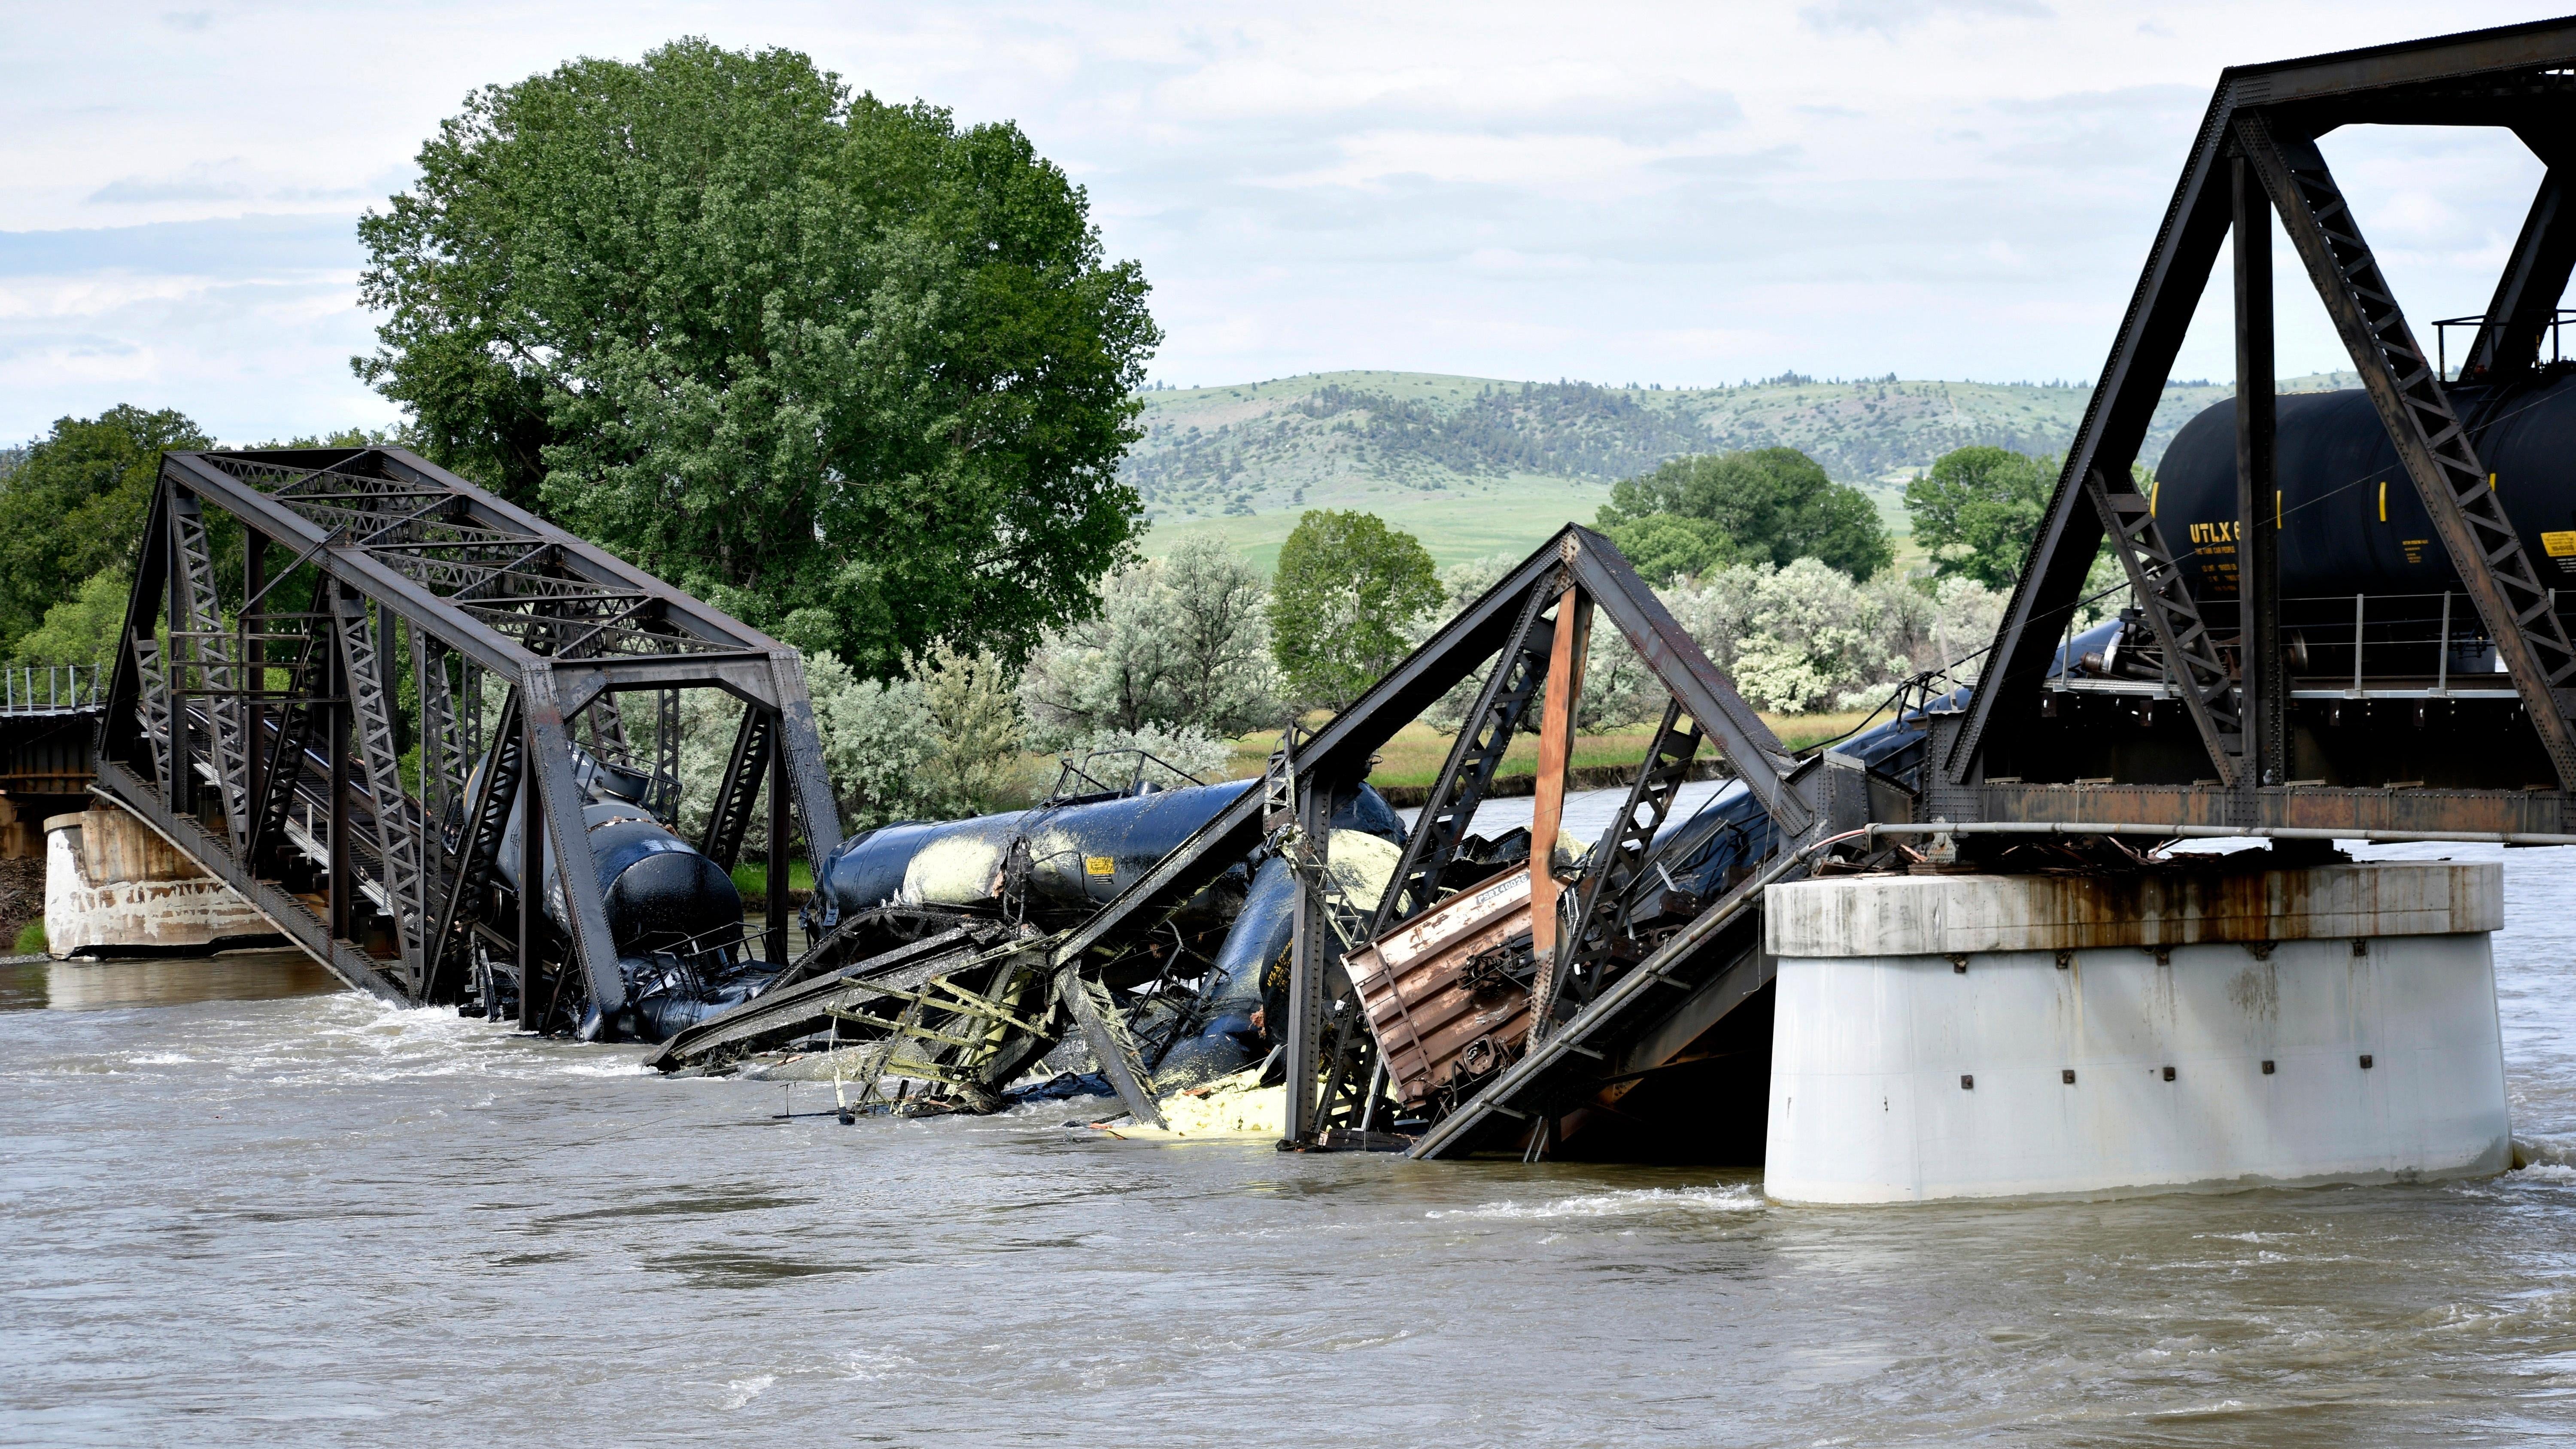 غرقت عدة عربات قطار في نهر يلوستون بعد انهيار جسر بالقرب من كولومبوس ، مونتانا ، يوم السبت 24 يونيو 2023.